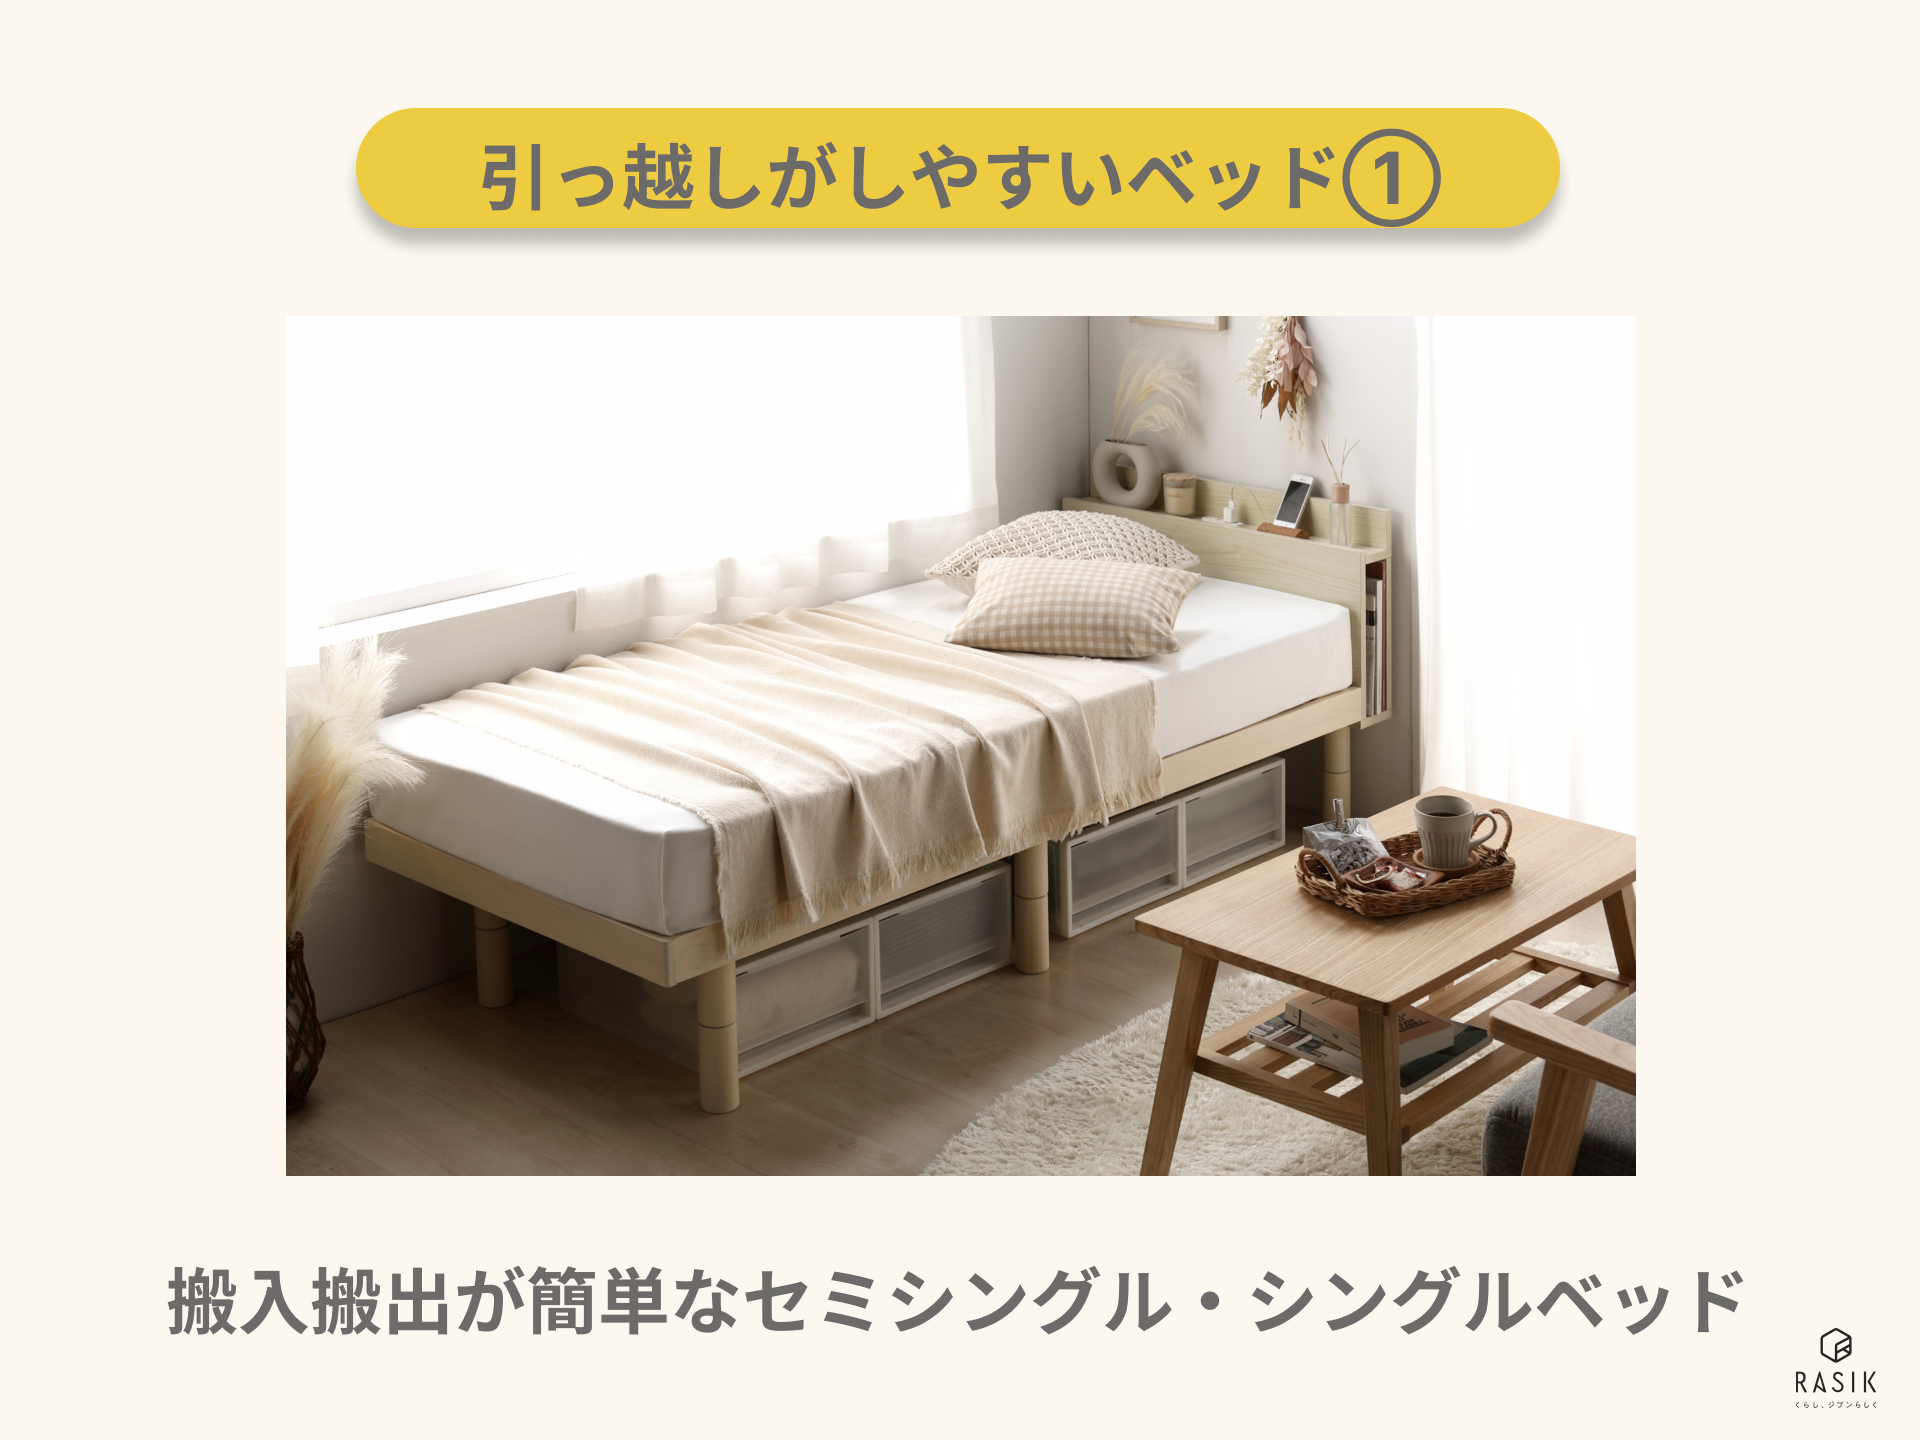 コンパクトサイズのベッドの画像